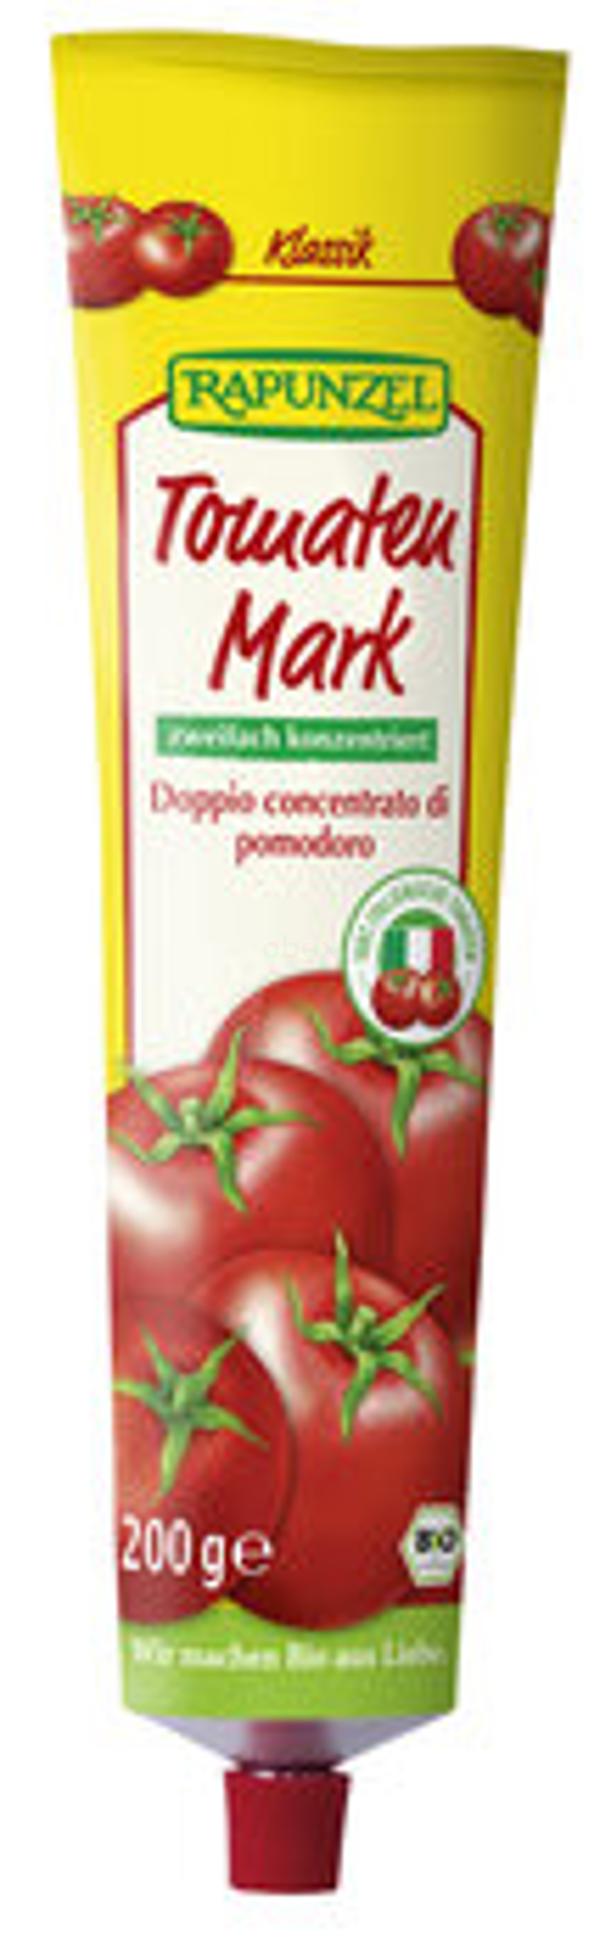 Produktfoto zu Tomatenmark Tube, 200 g